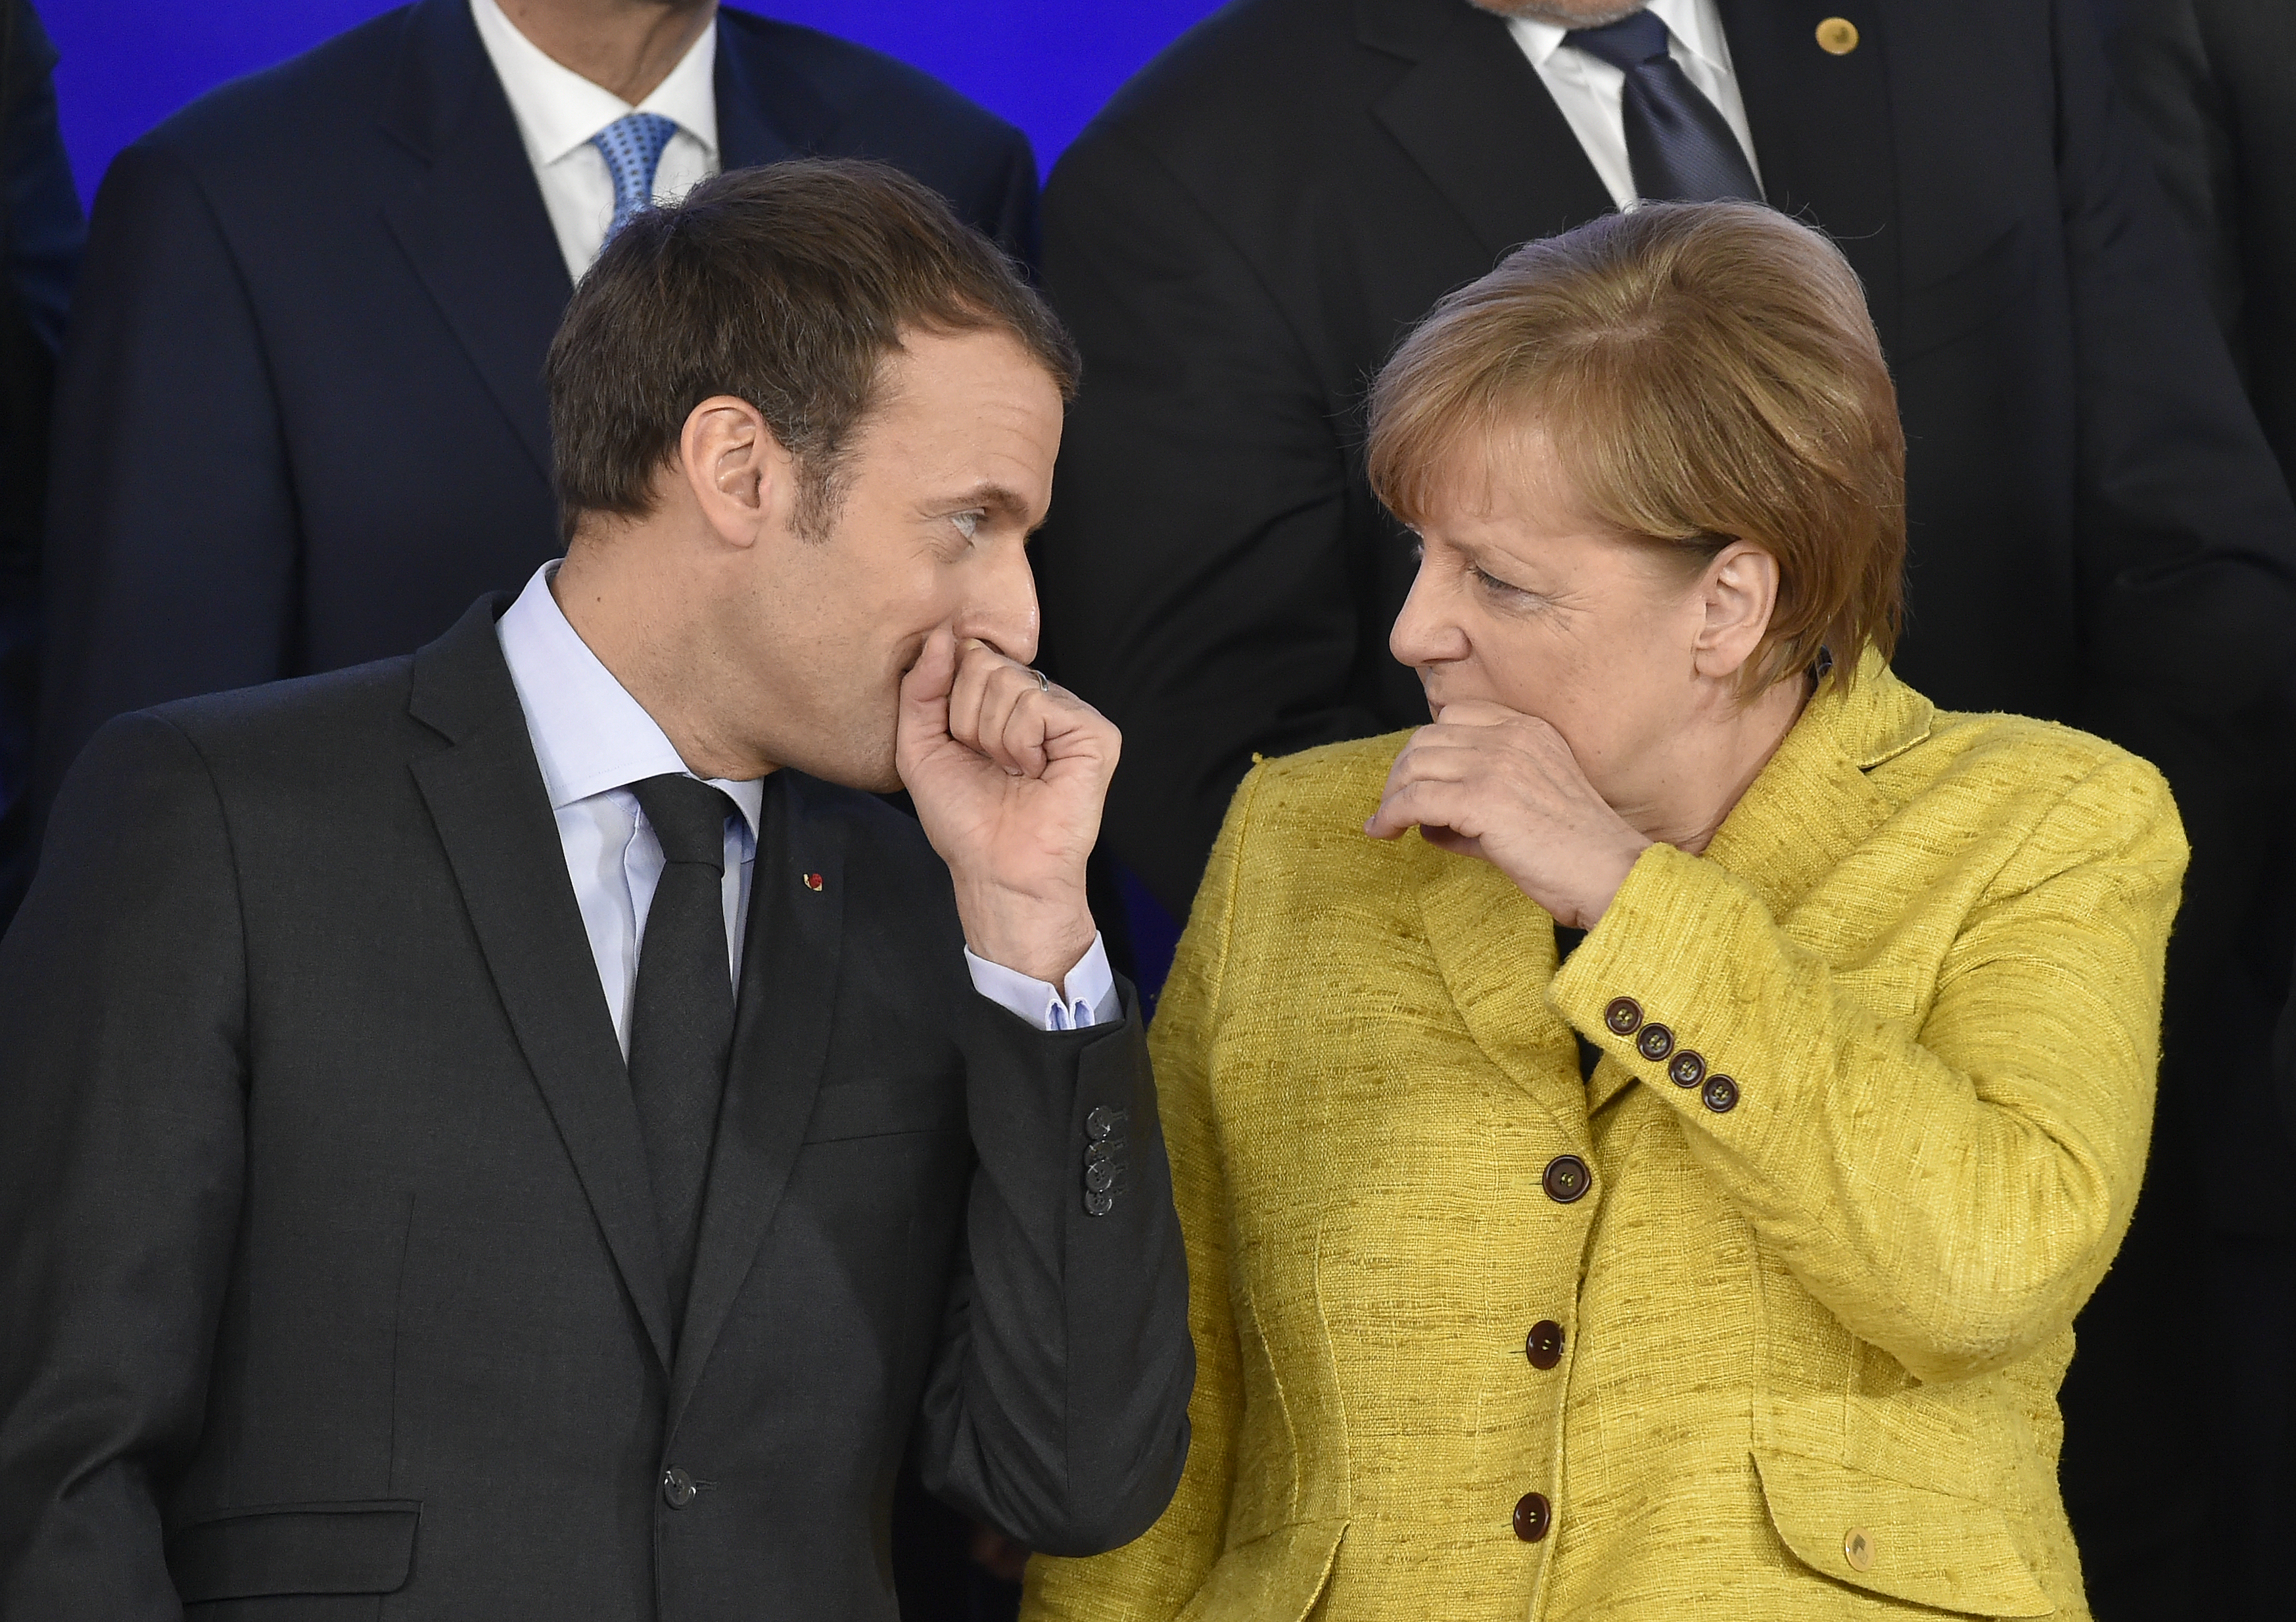 Macronnak nagy tervei vannak az EU-val, de a németek kevésbé lelkesek, amikor szóba jön, hogy mennyibe kerülne nekik